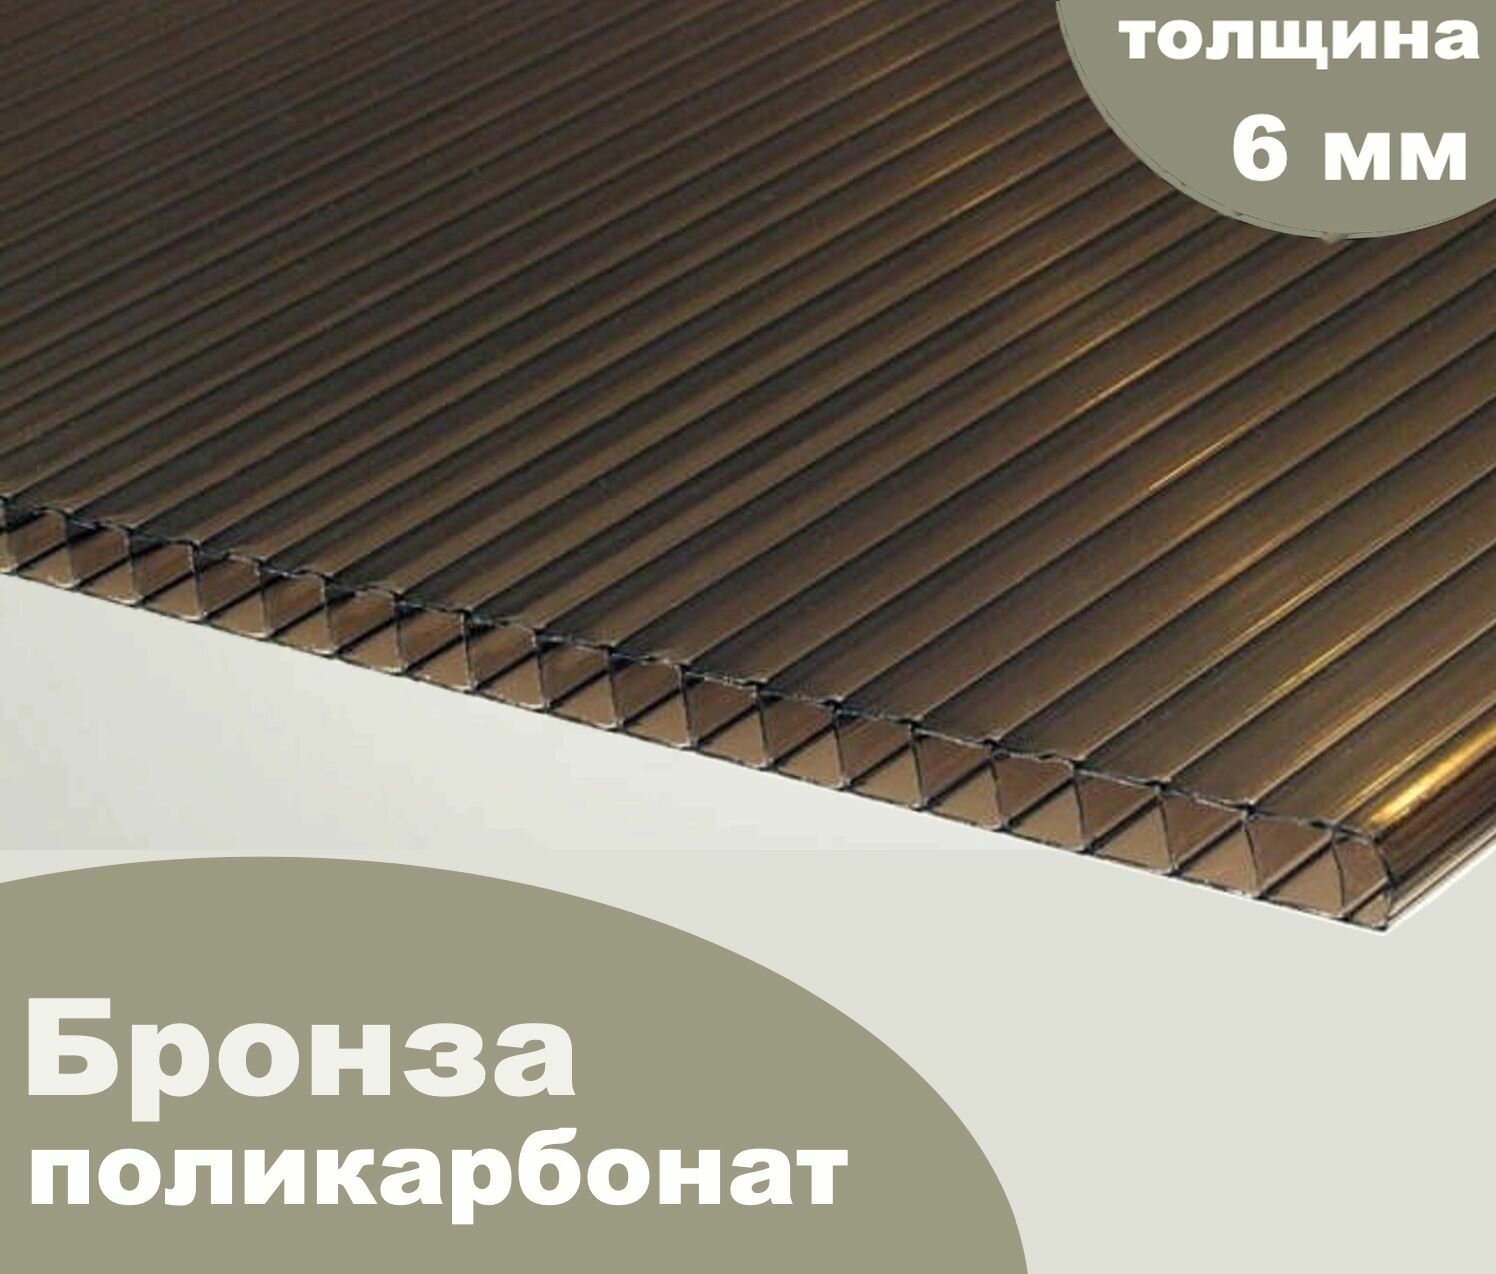 Сотовый поликарбонат бронза, Ultramarin, 6 мм, 12 метров, 1 лист